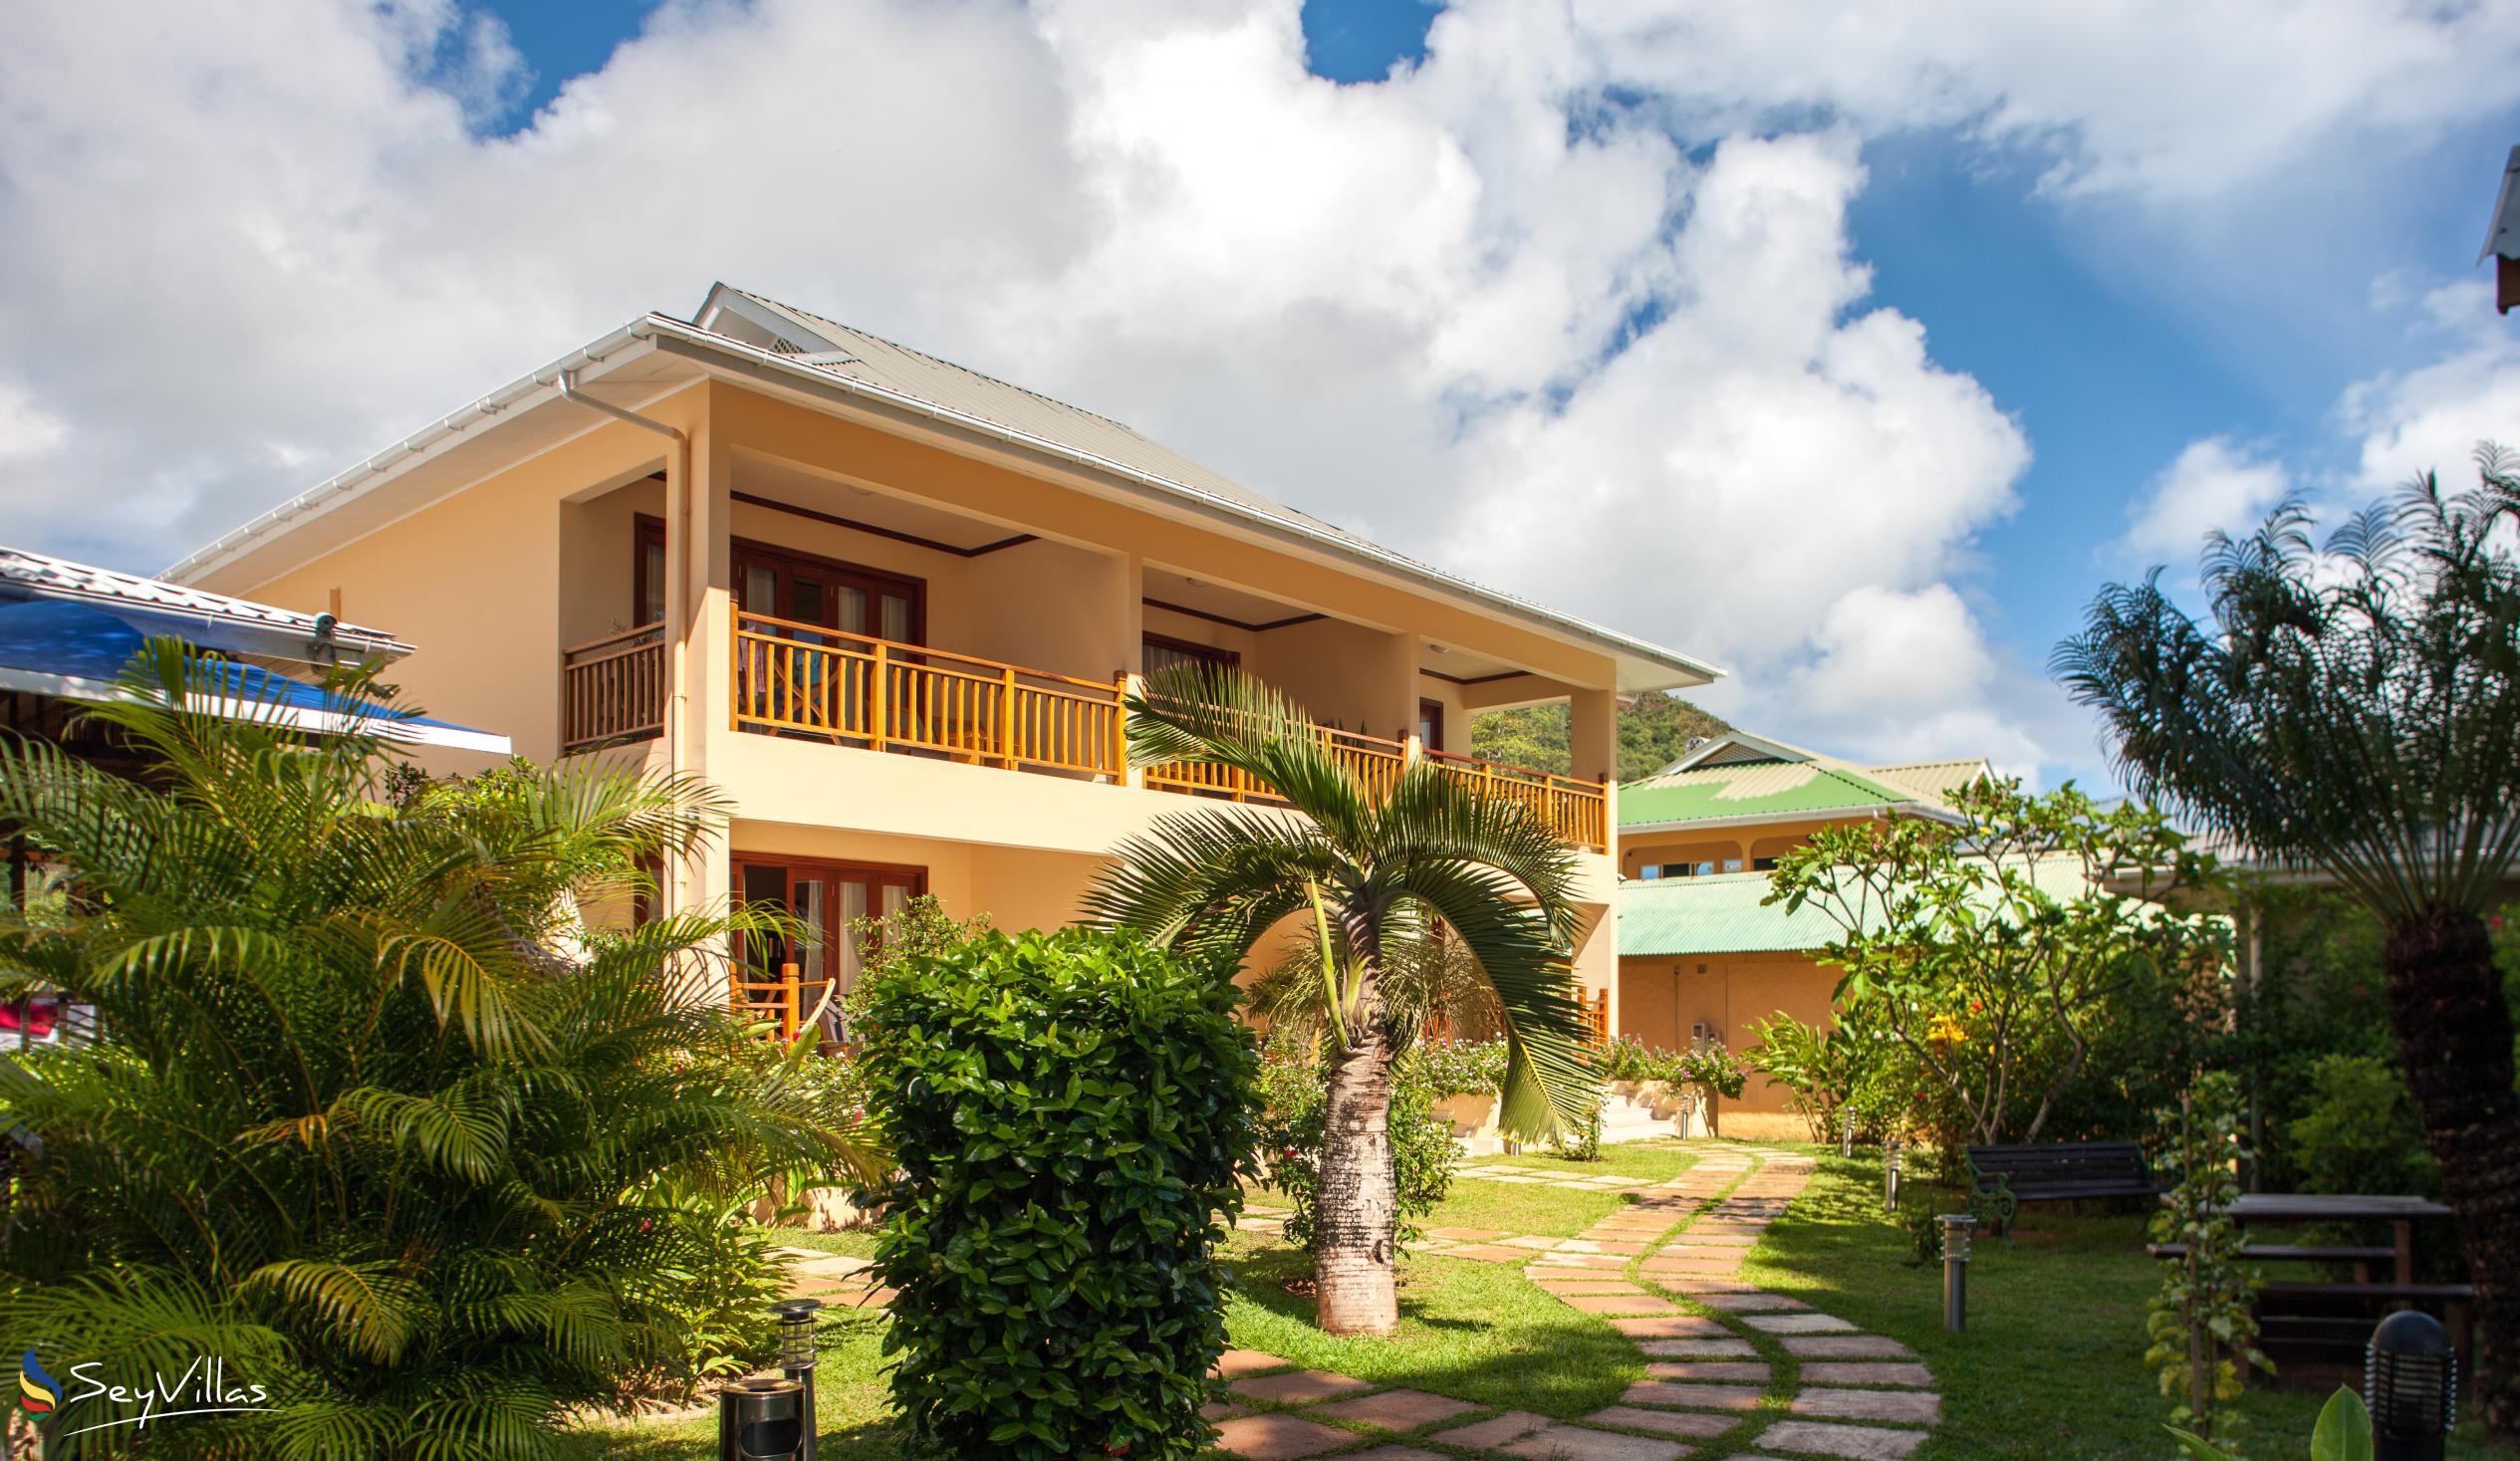 Foto 2: Pirogue Lodge - Aussenbereich - Praslin (Seychellen)